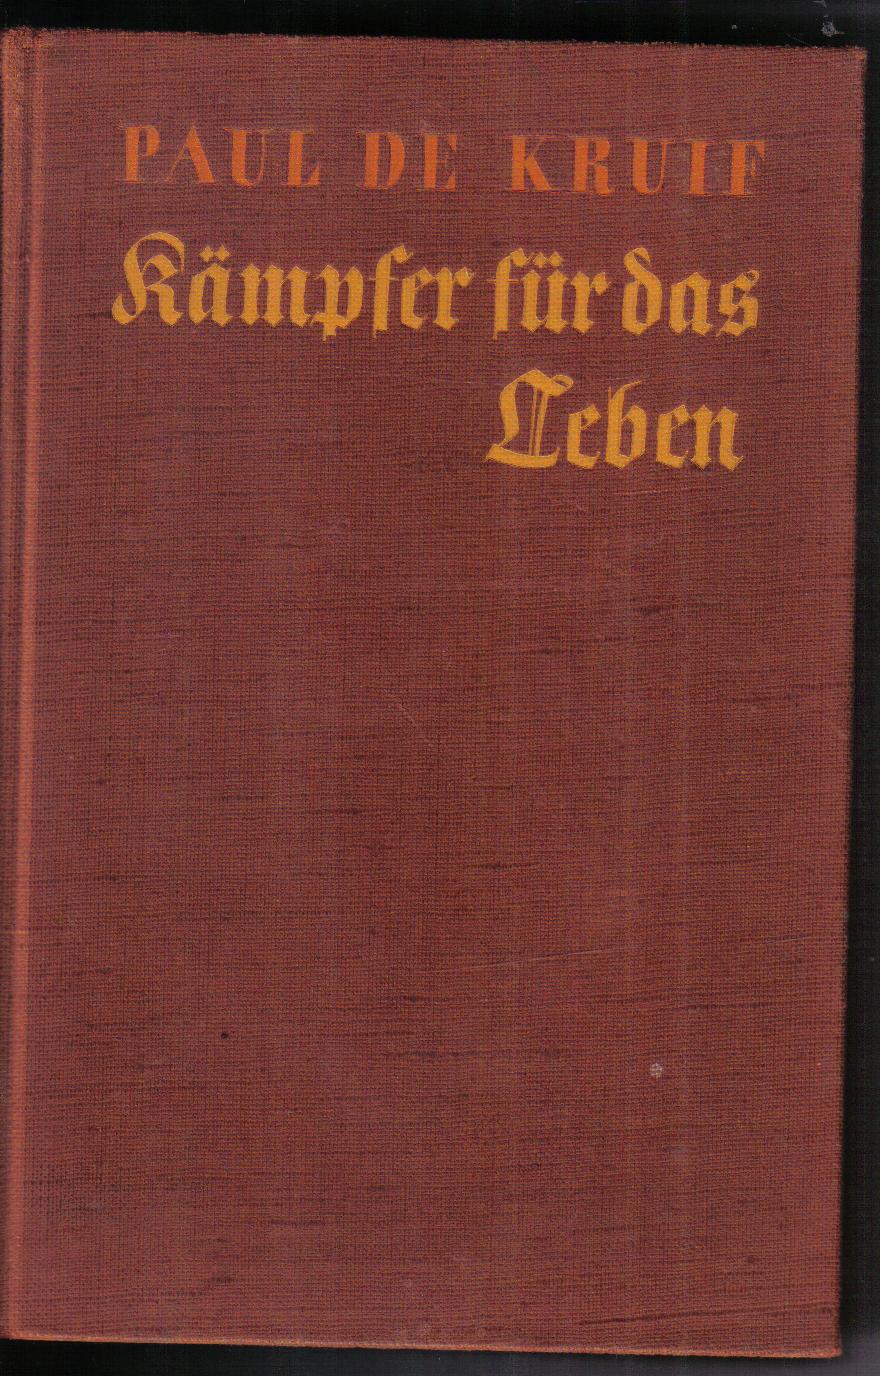 Kaempfer fuer das Leben Paul de  Kruif    (altdeutsche Schrift )